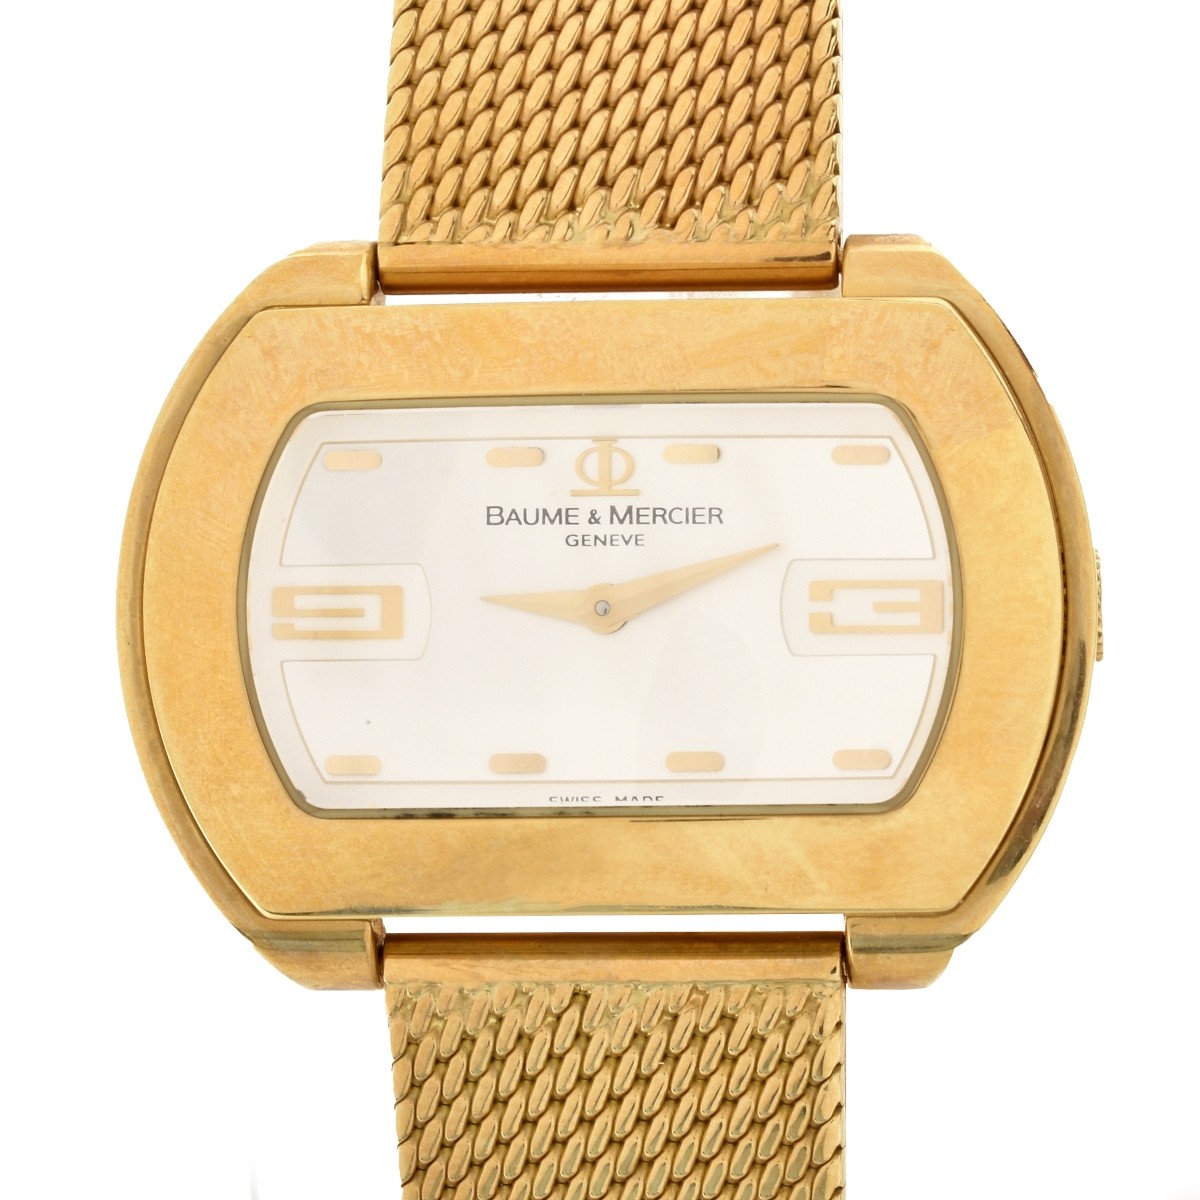 Baume & Mercier 18K Watch